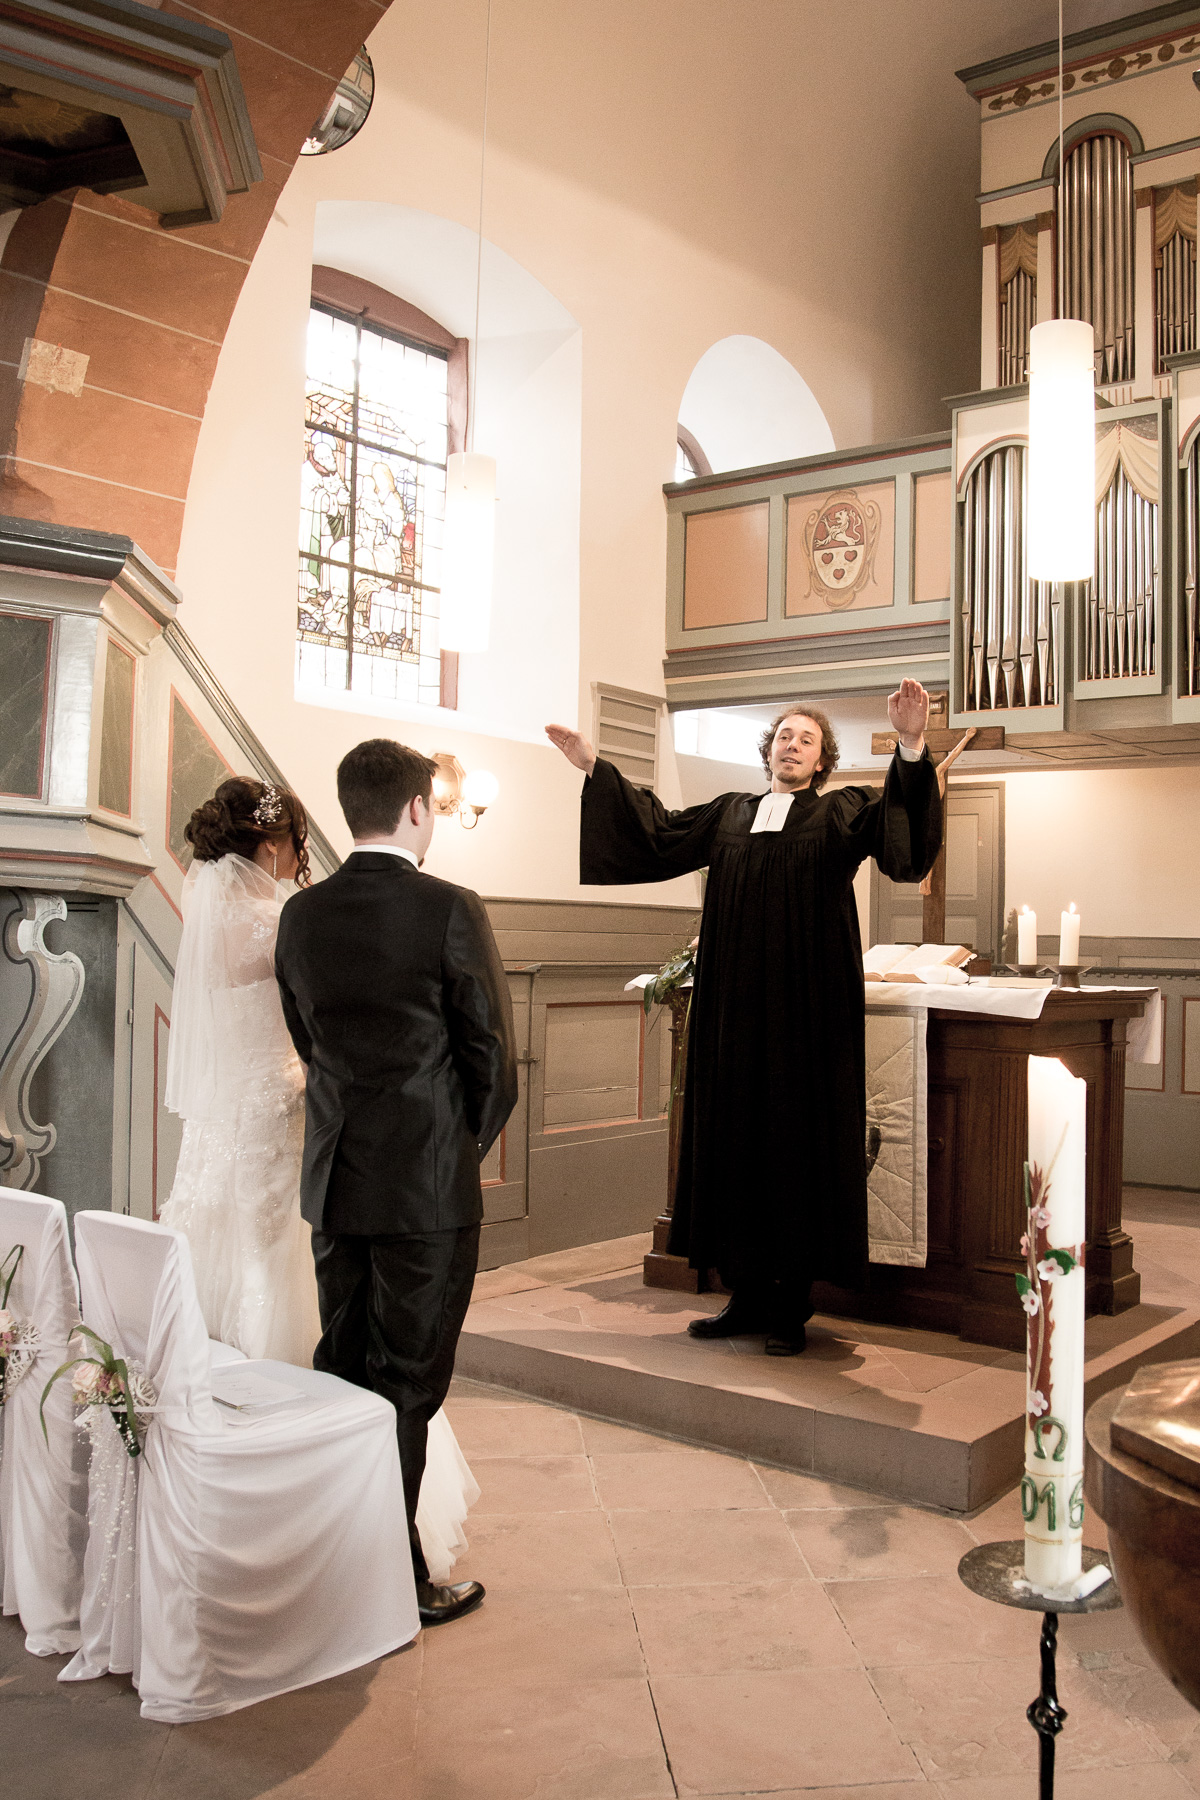 Der Priester streckt seine Arme diagonal hoch, und spricht den Glückssegen dem jungen Hochzeitspaar aus, während sie vor ihm stehen.